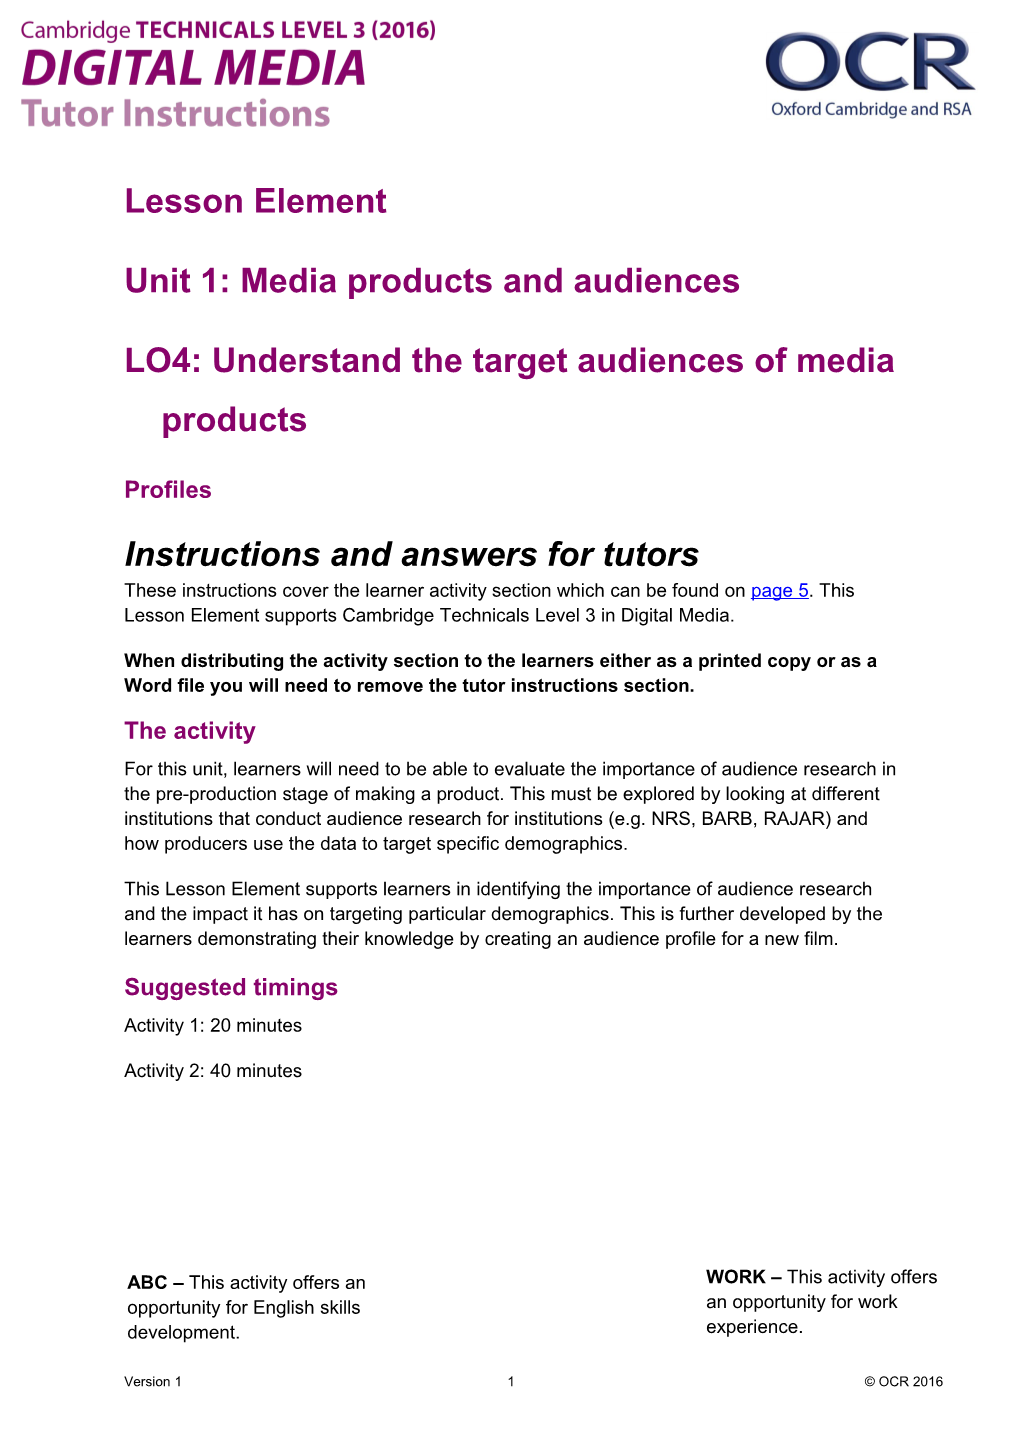 Cambridge Technicals Level 3 Digital Media Lesson Element 3